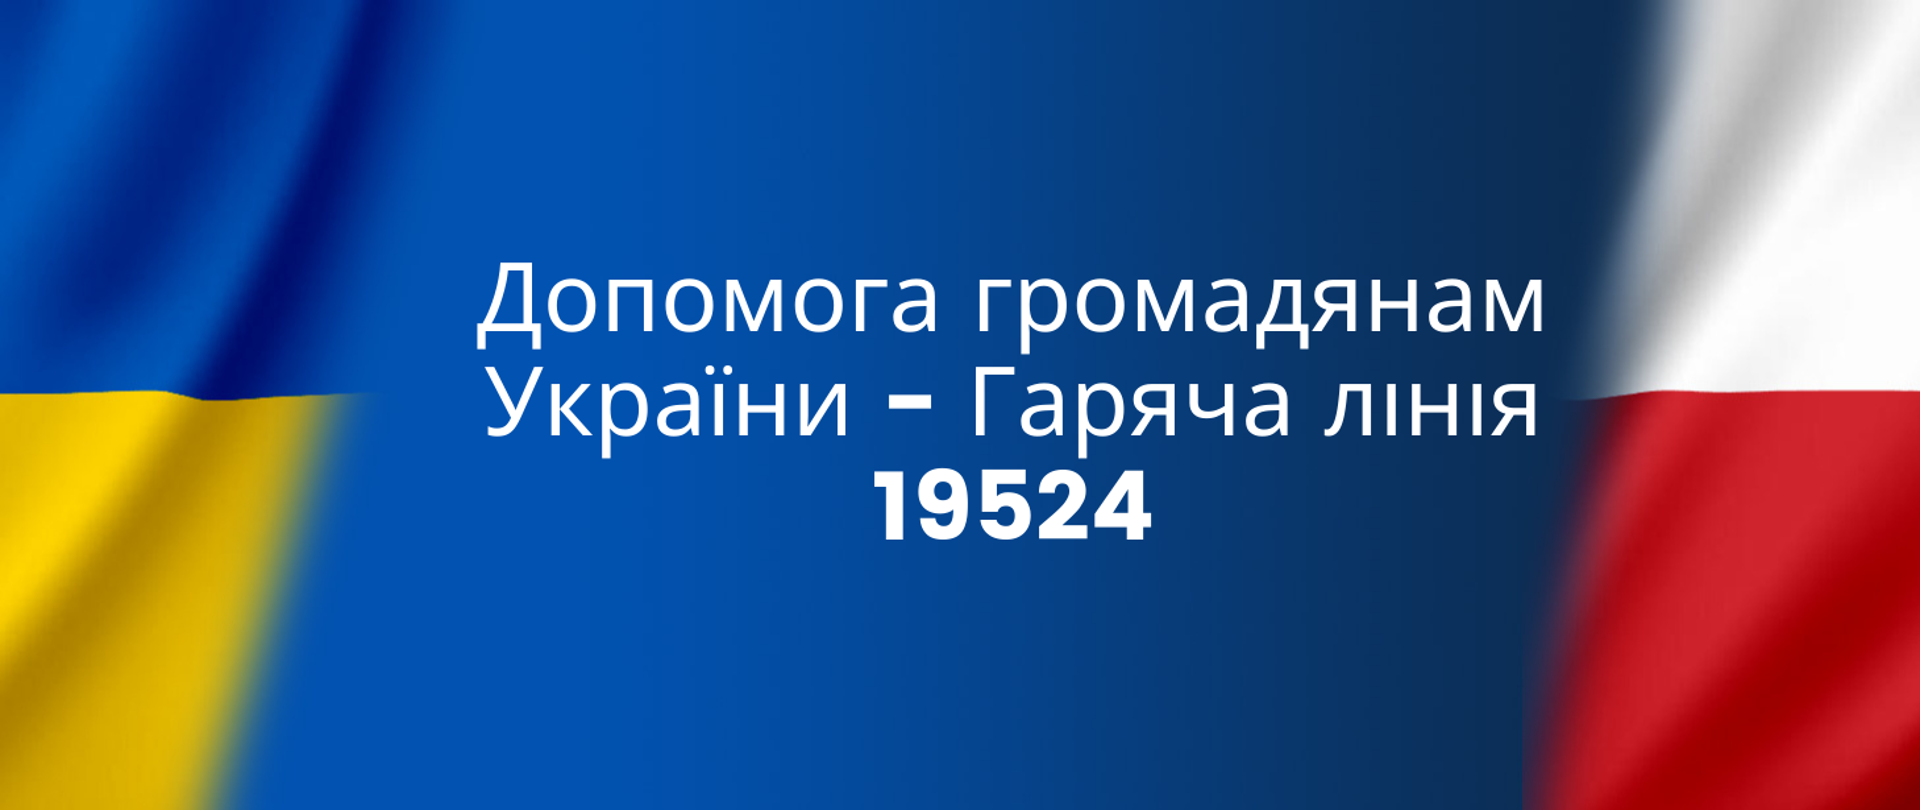 Допомога громадянам України - Гаряча лінія 19524